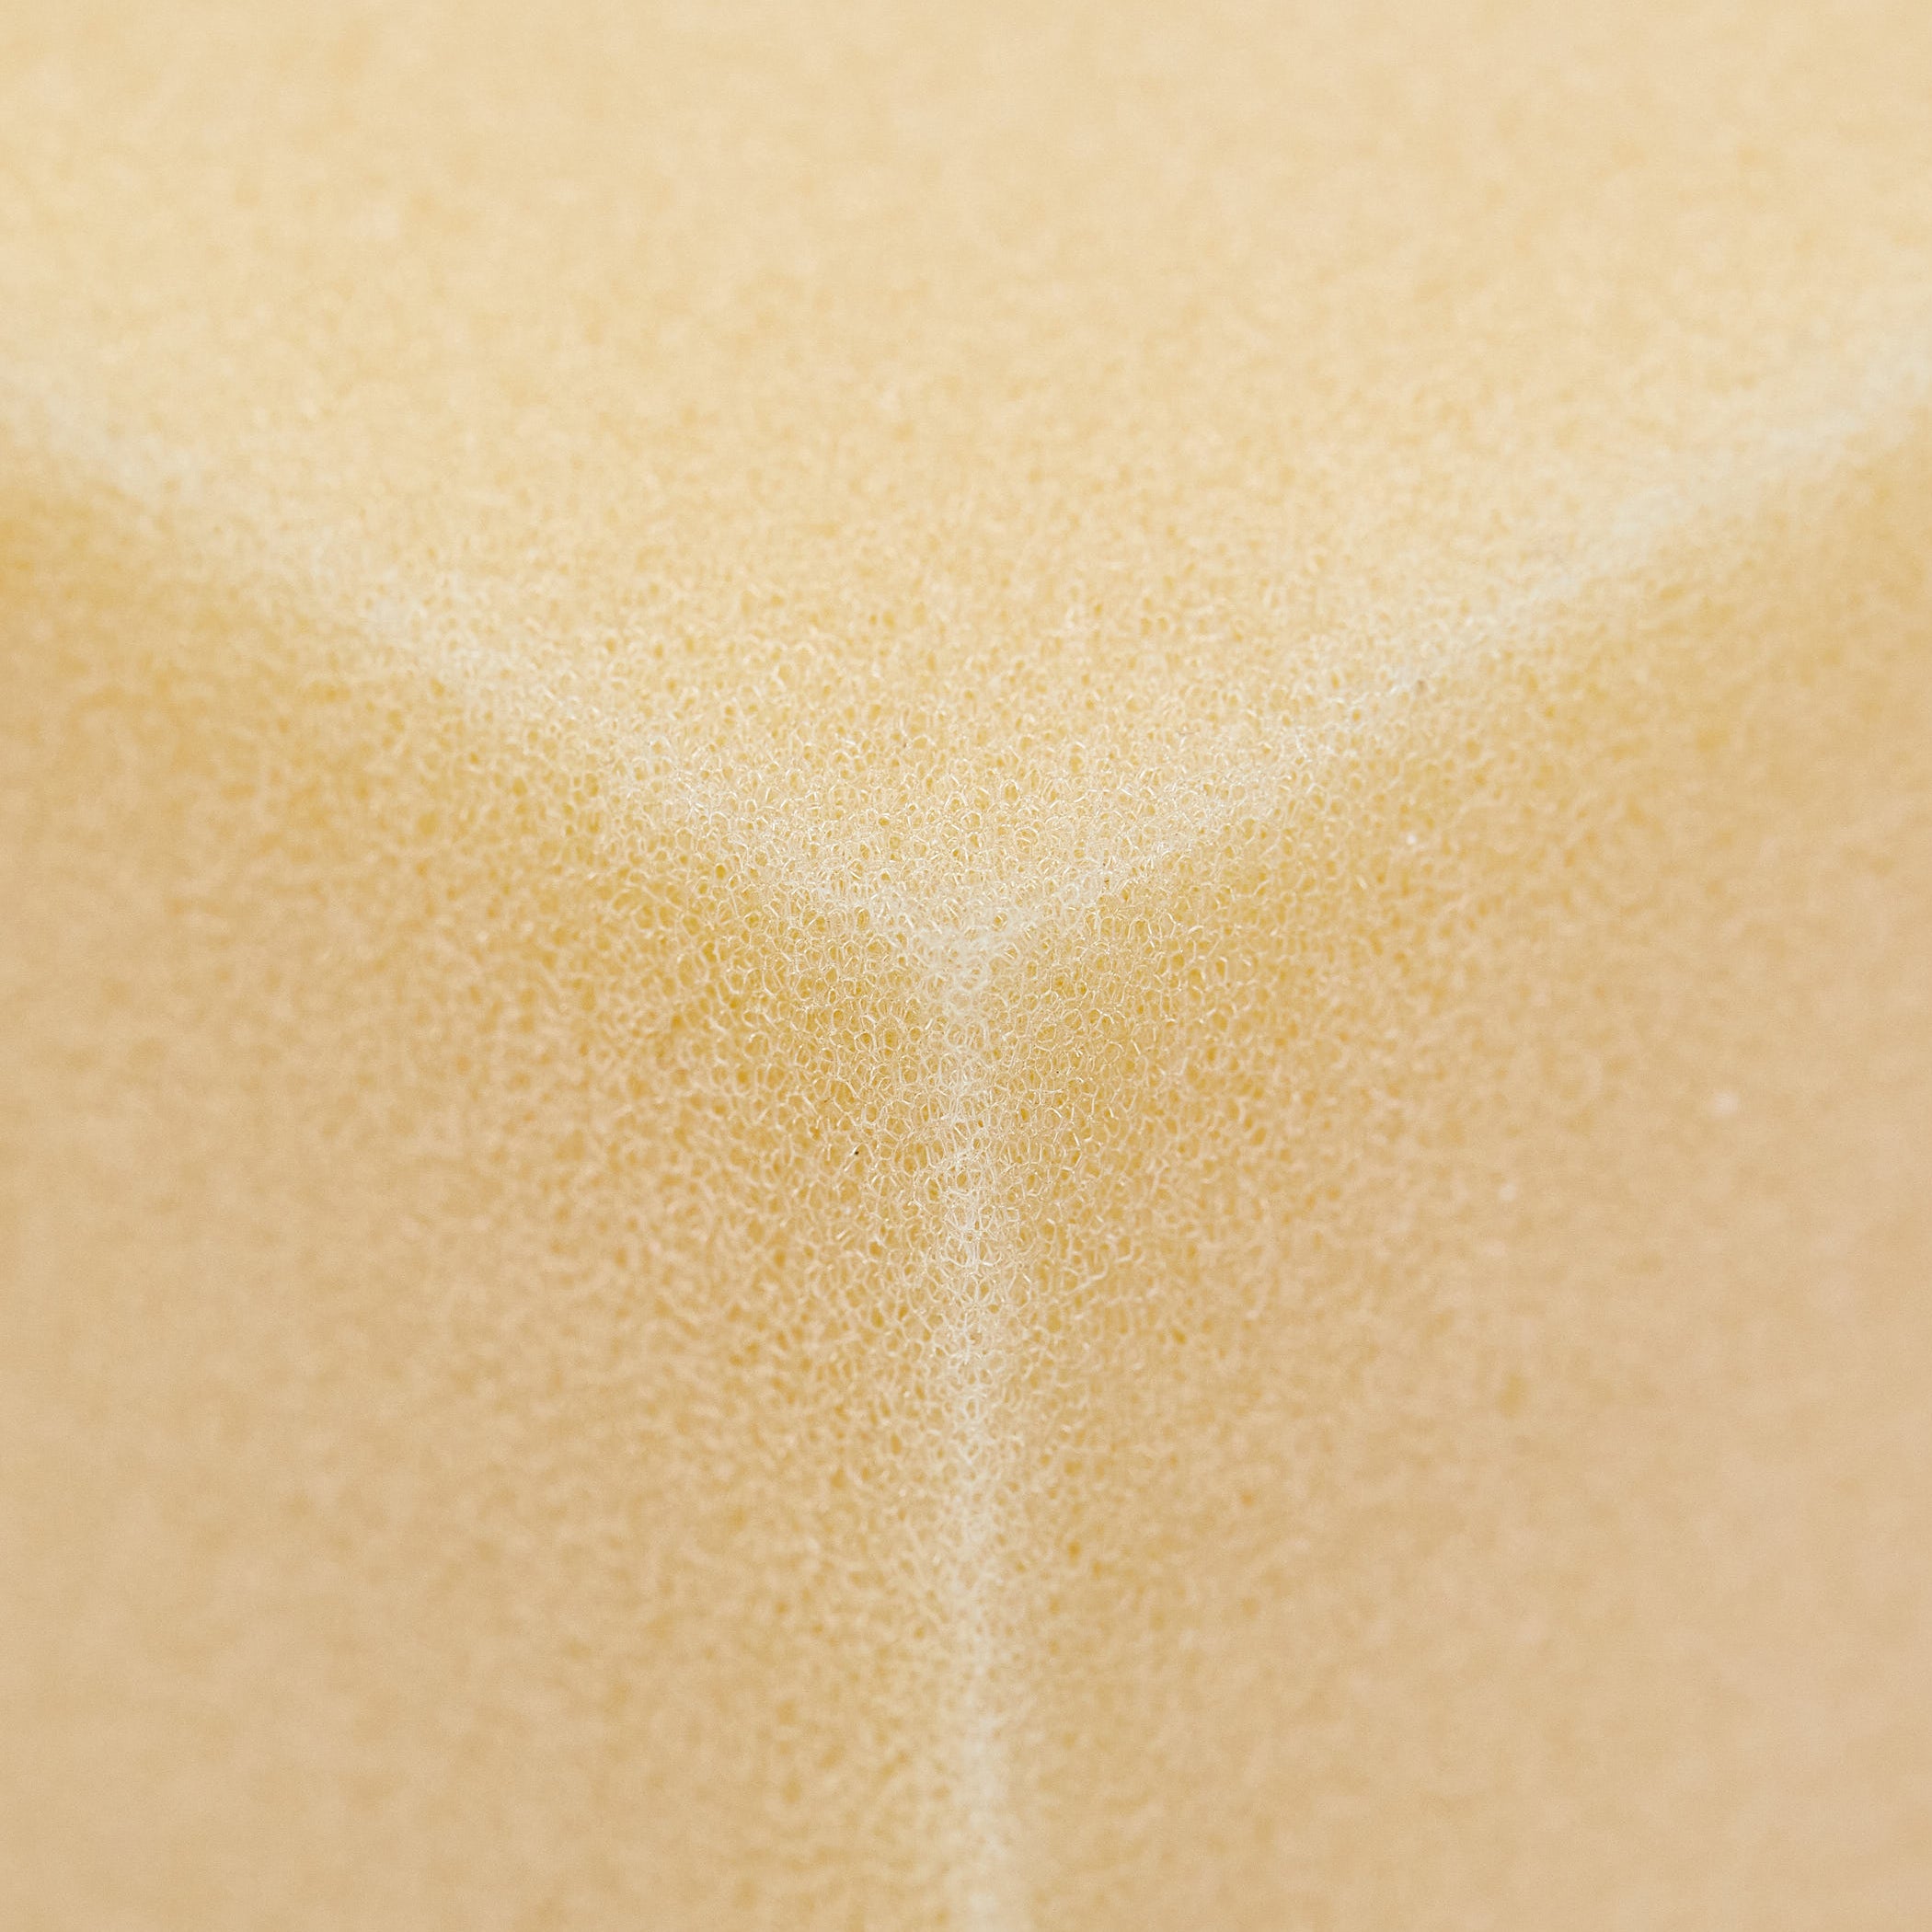 close up photo of foam